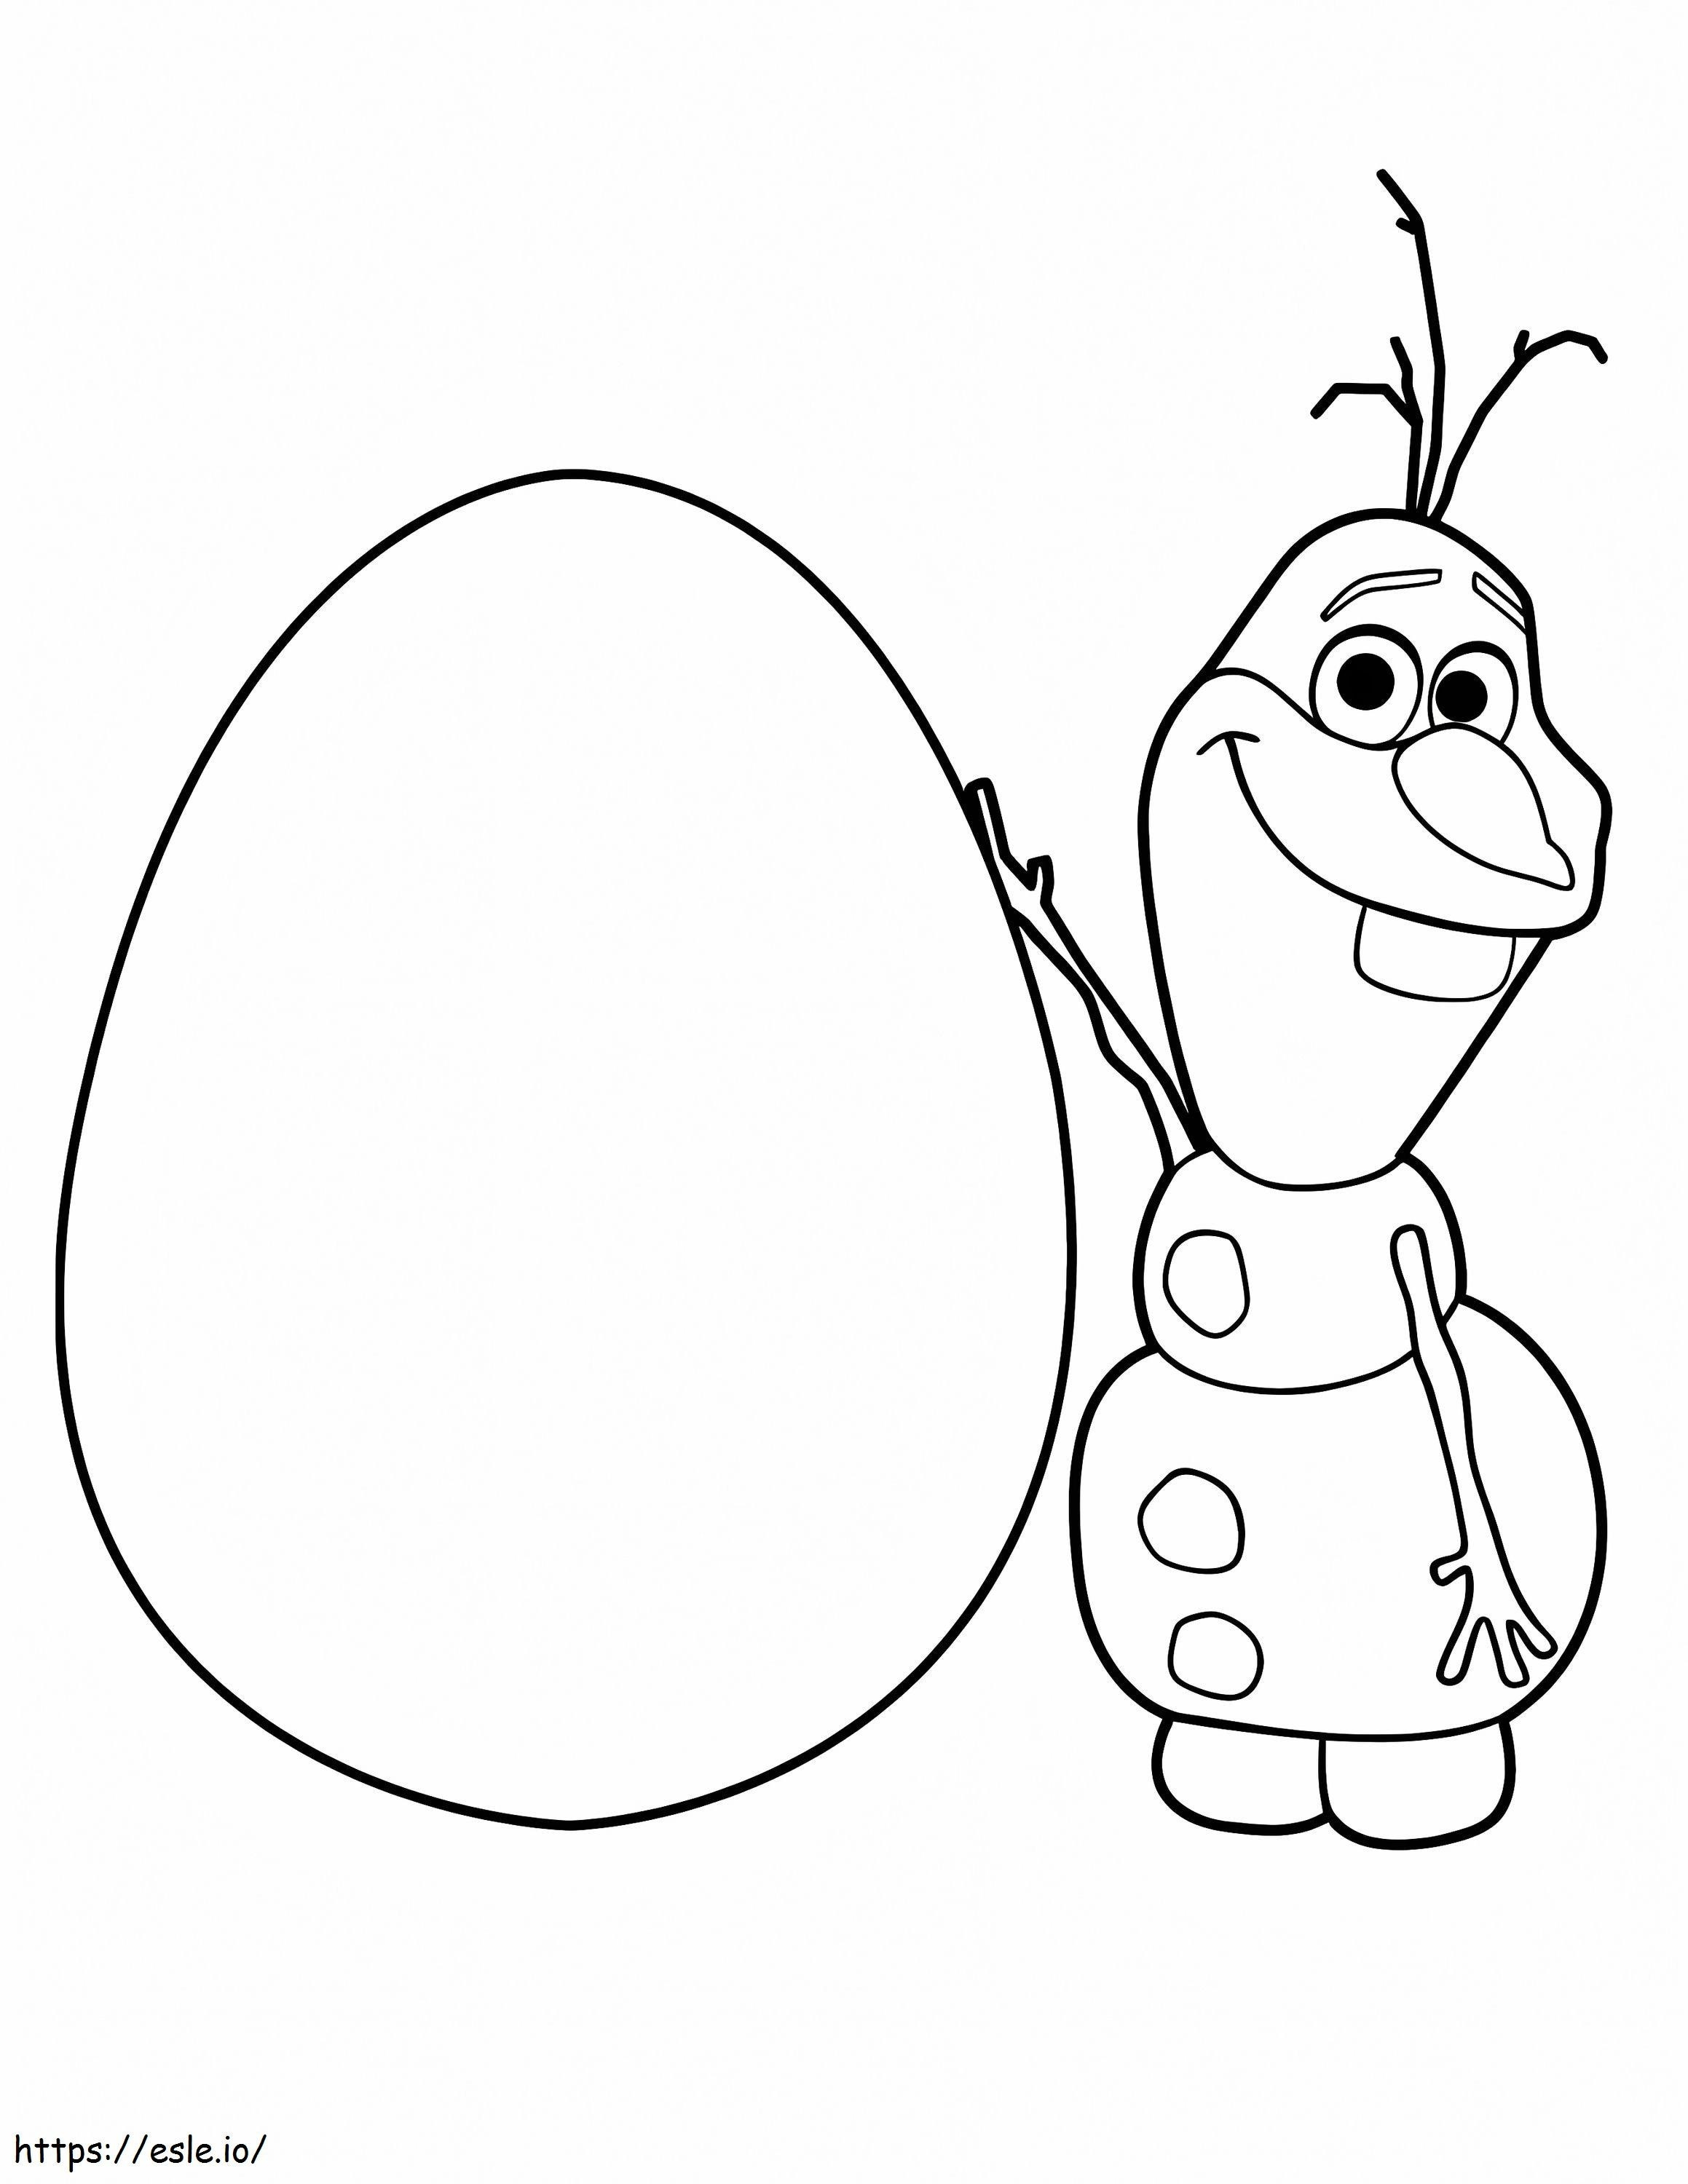 Olaf y huevo para colorear